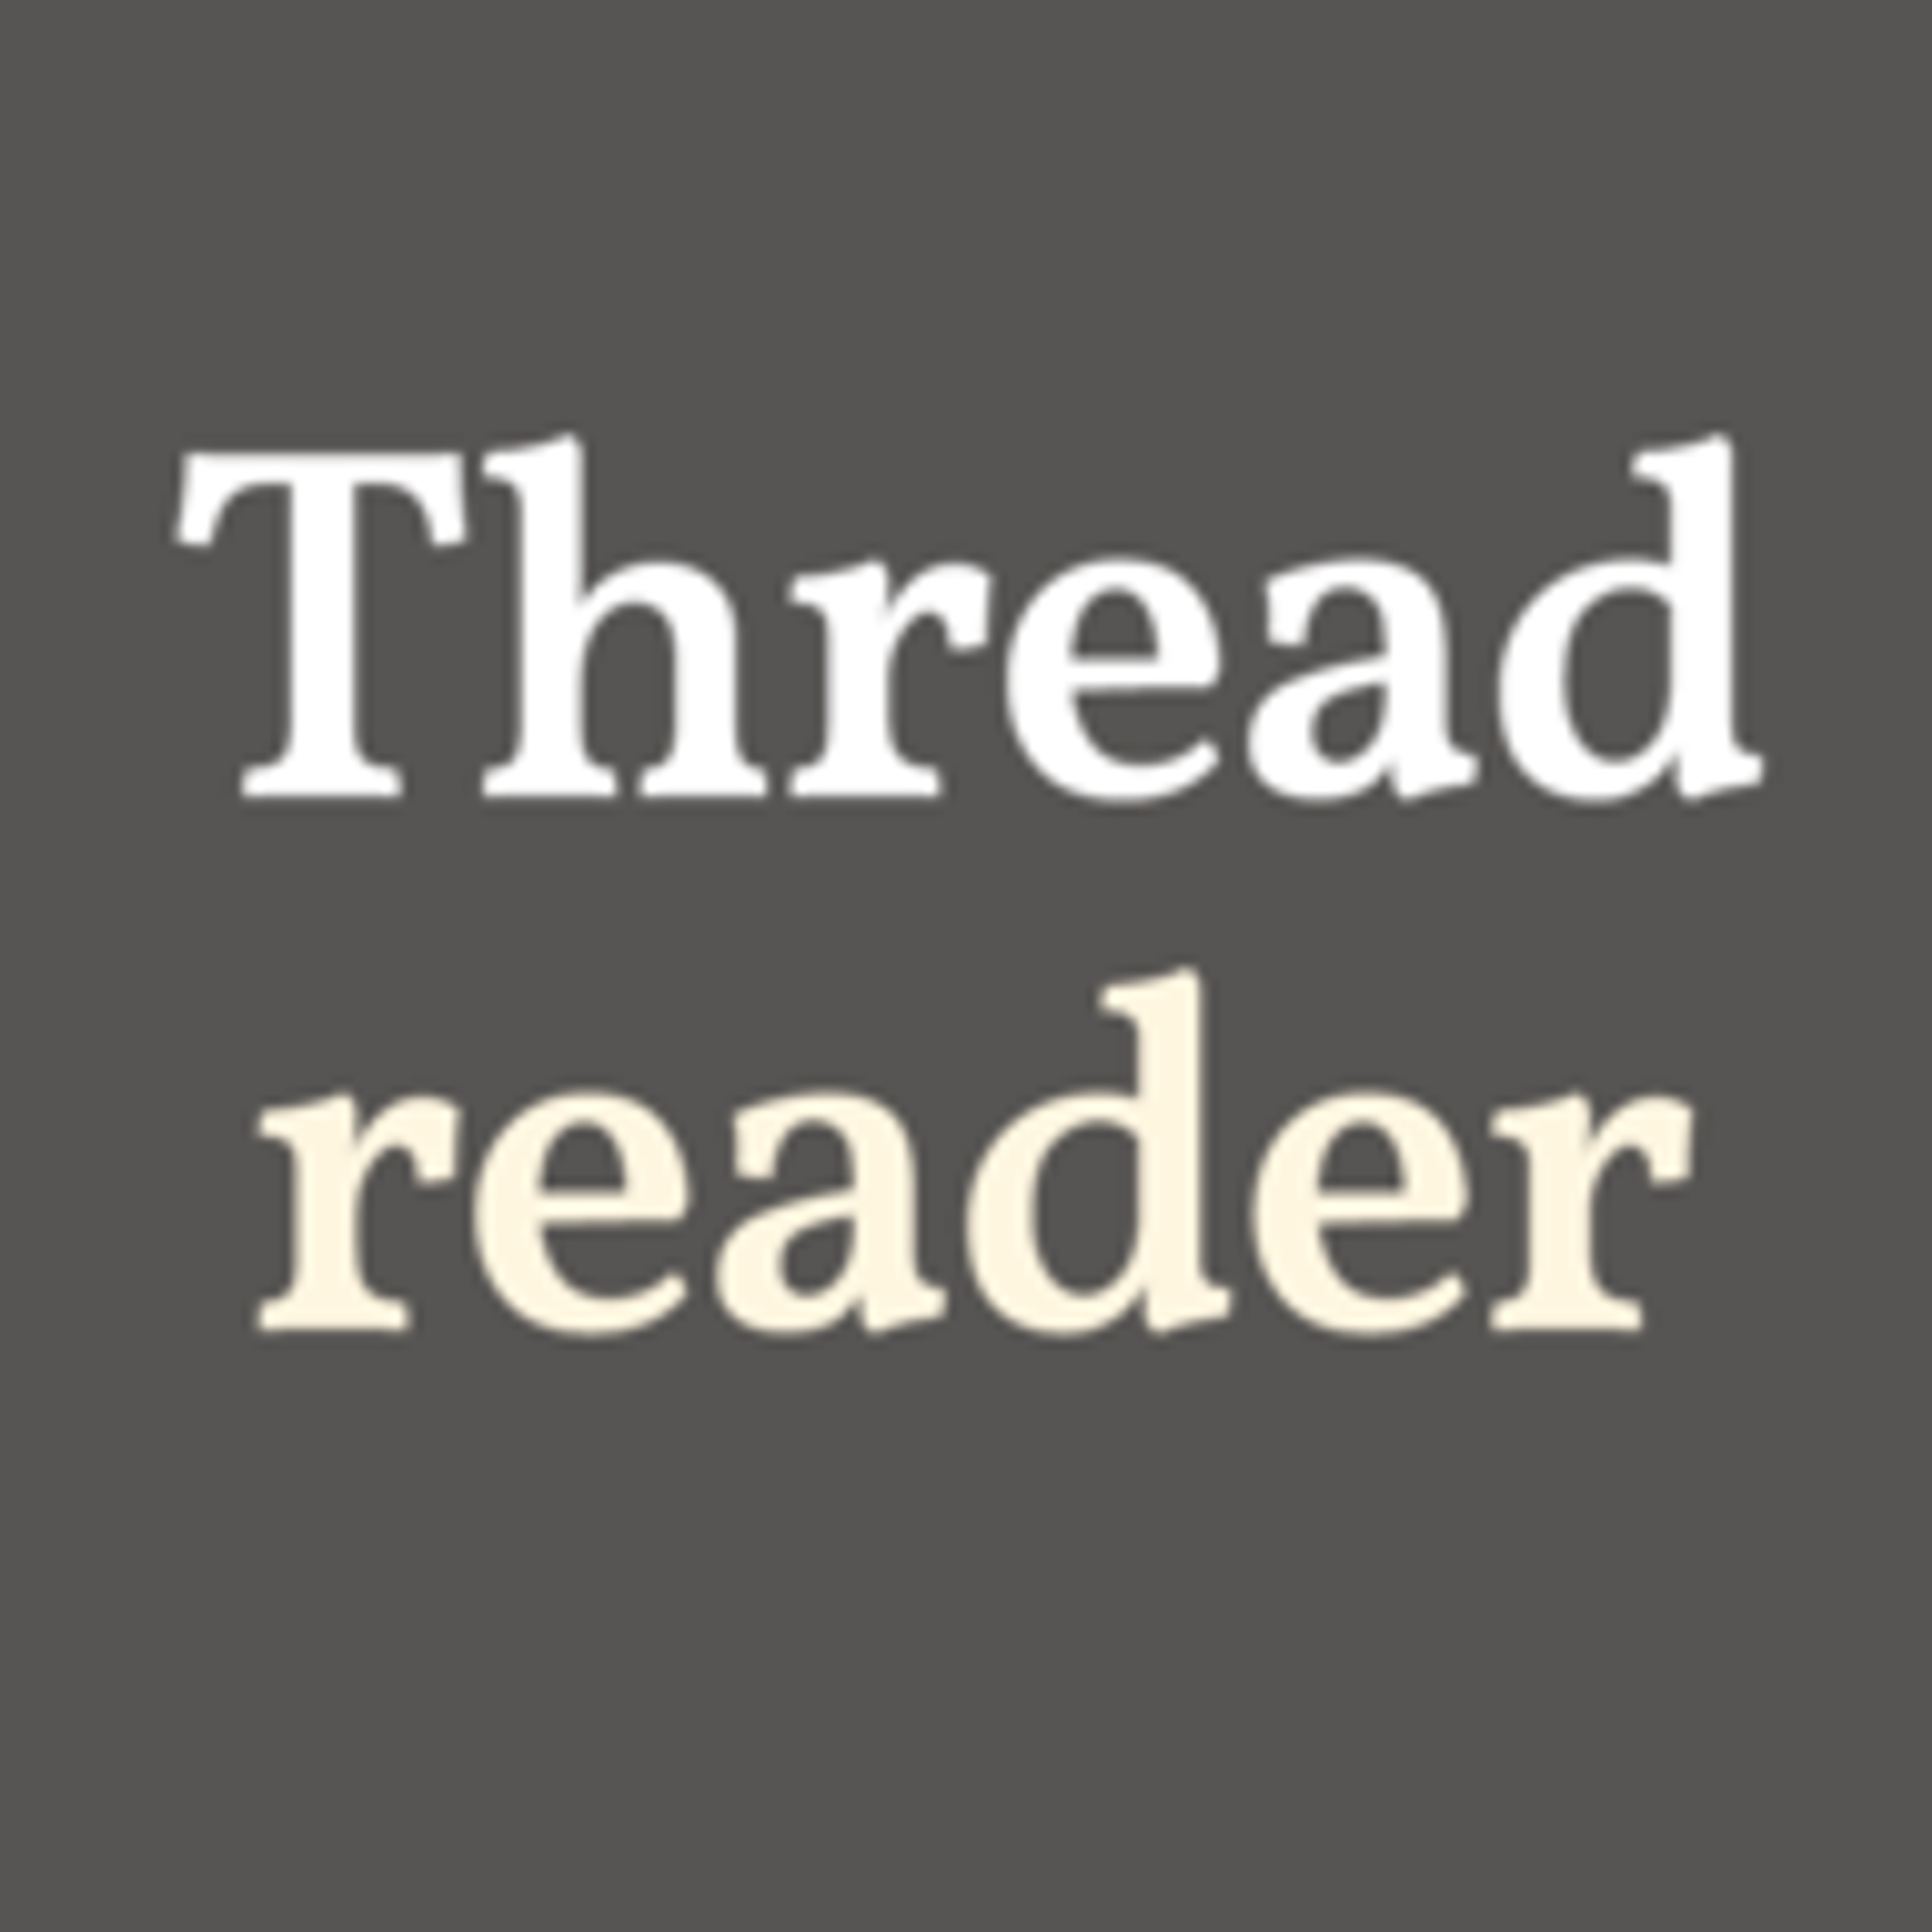 Thread by @MKBHD on Thread Reader App